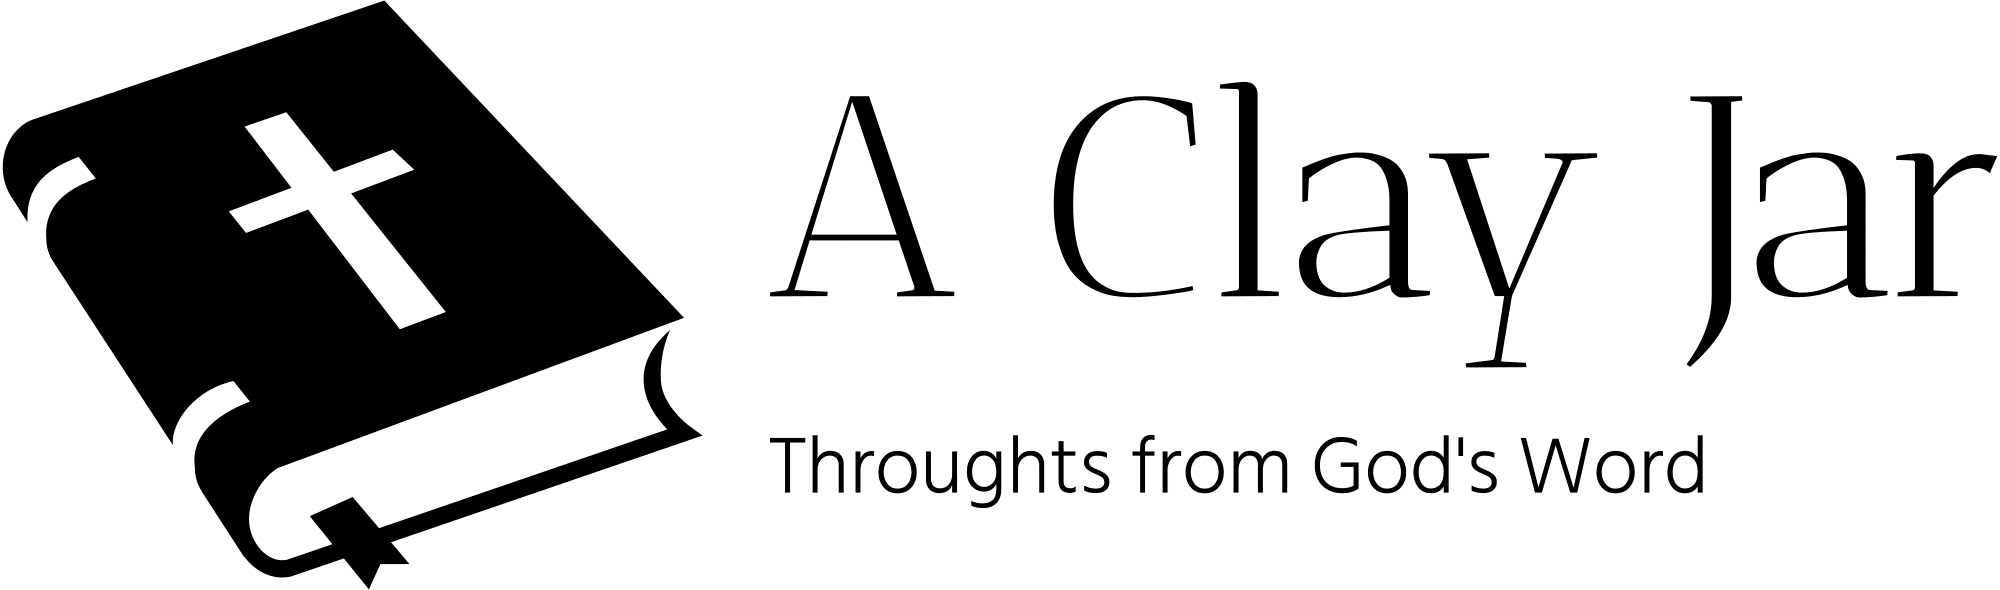 A Clay Jar logo